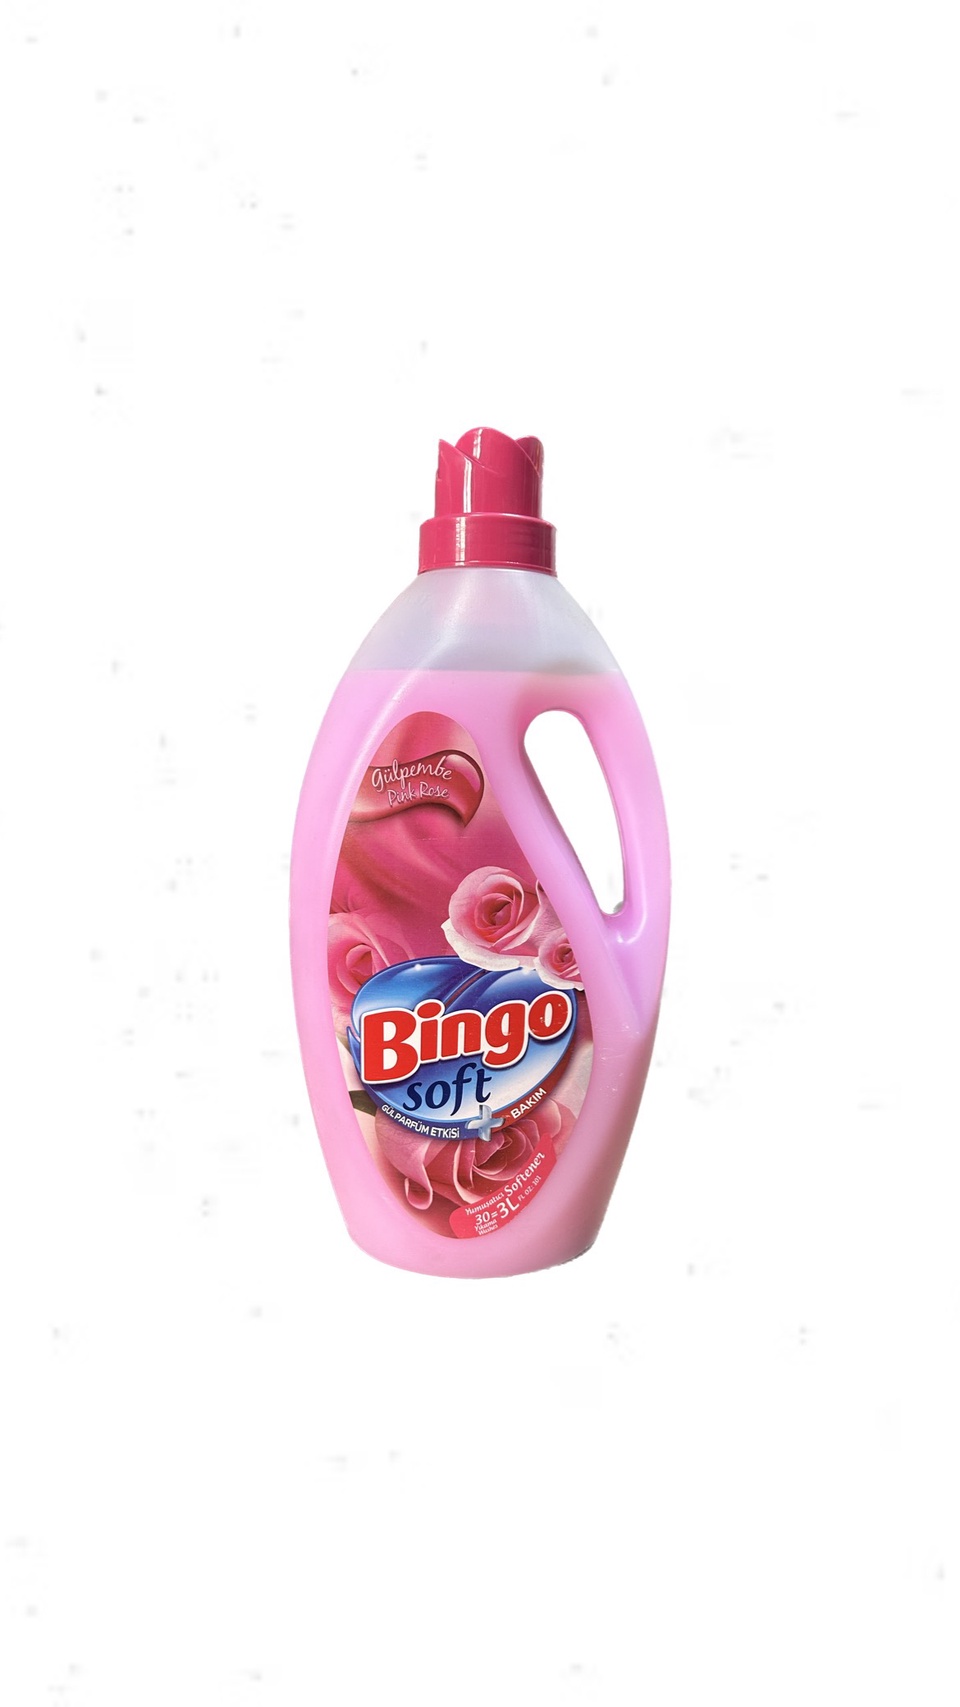 Кондиционер для белья PINK ROSE Soft с парфюмом/аромат розы, 3 л, Bingo - 500 ₽, заказать онлайн.